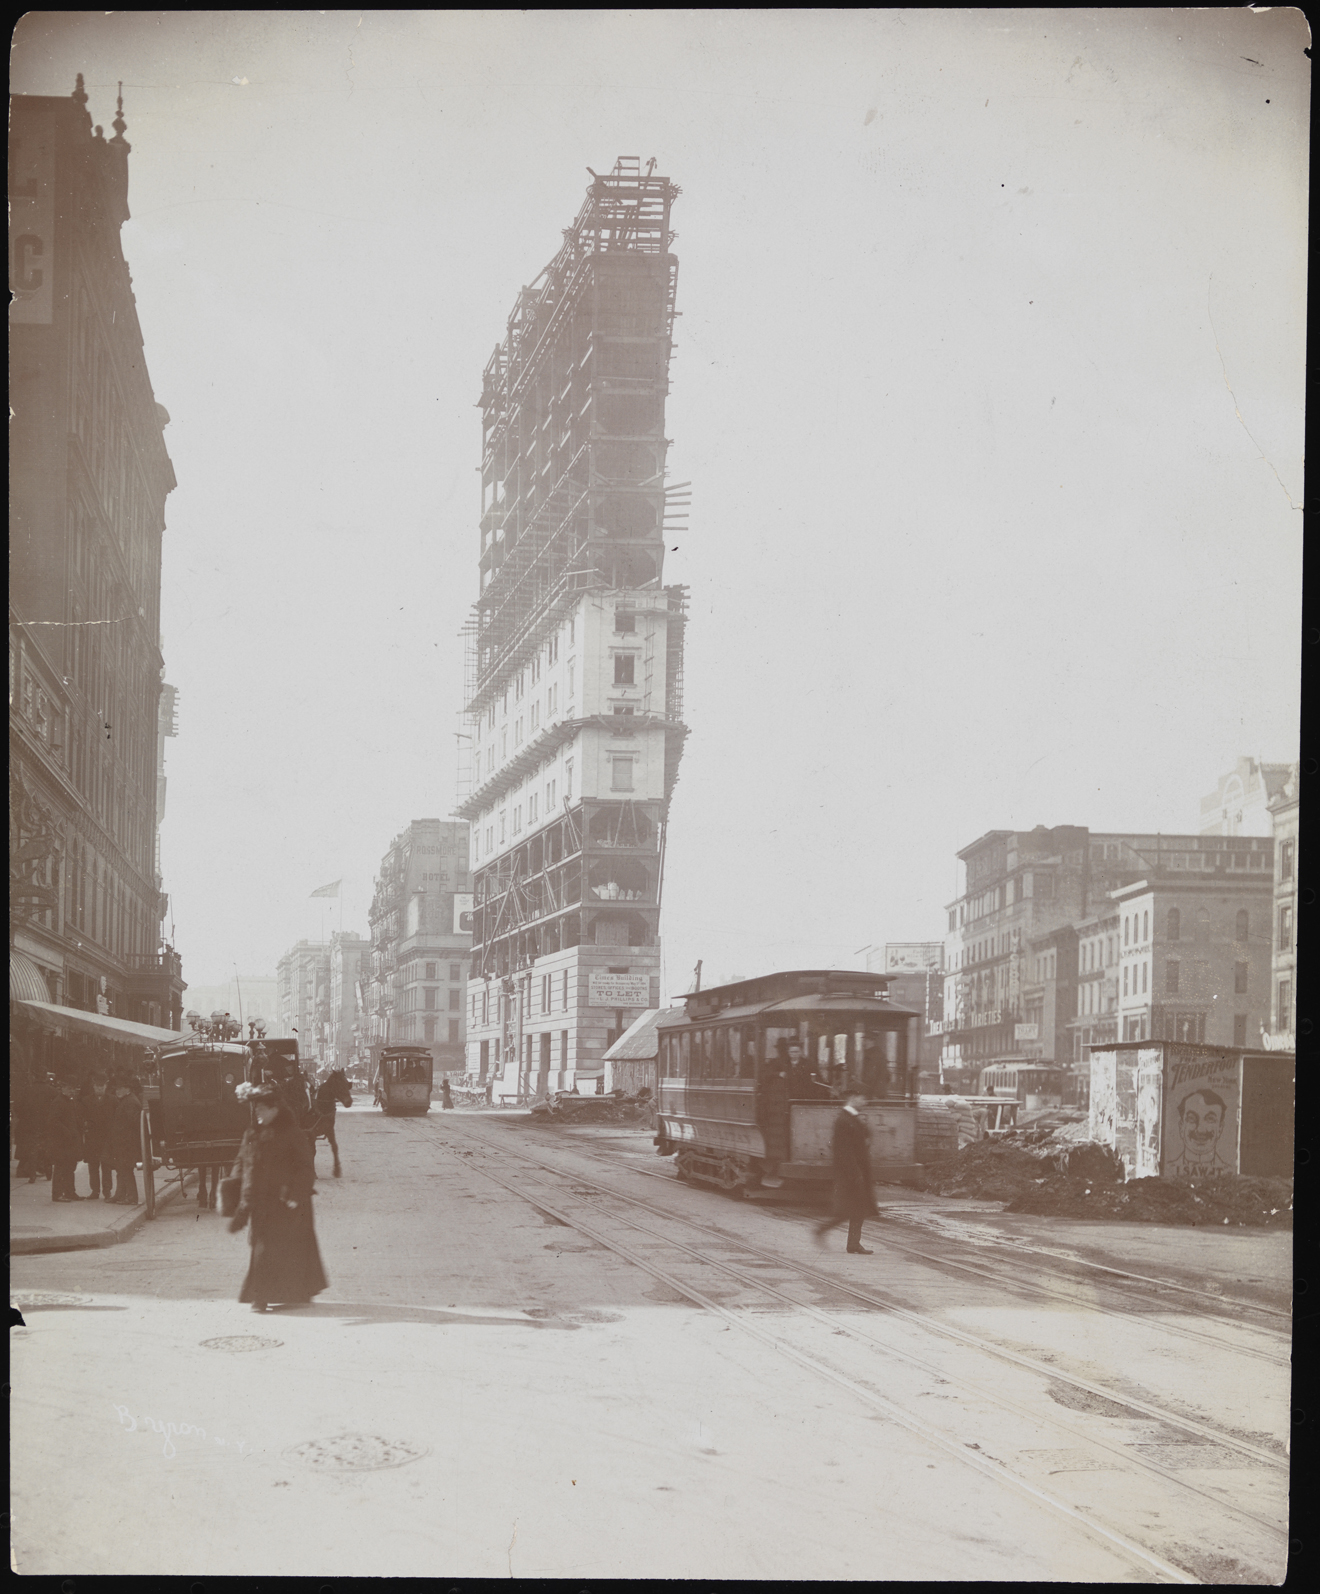 拜伦公司。 建筑物，时代大厦正在建设中，ca。 1903年。纽约市博物馆。 93.1.1.16687